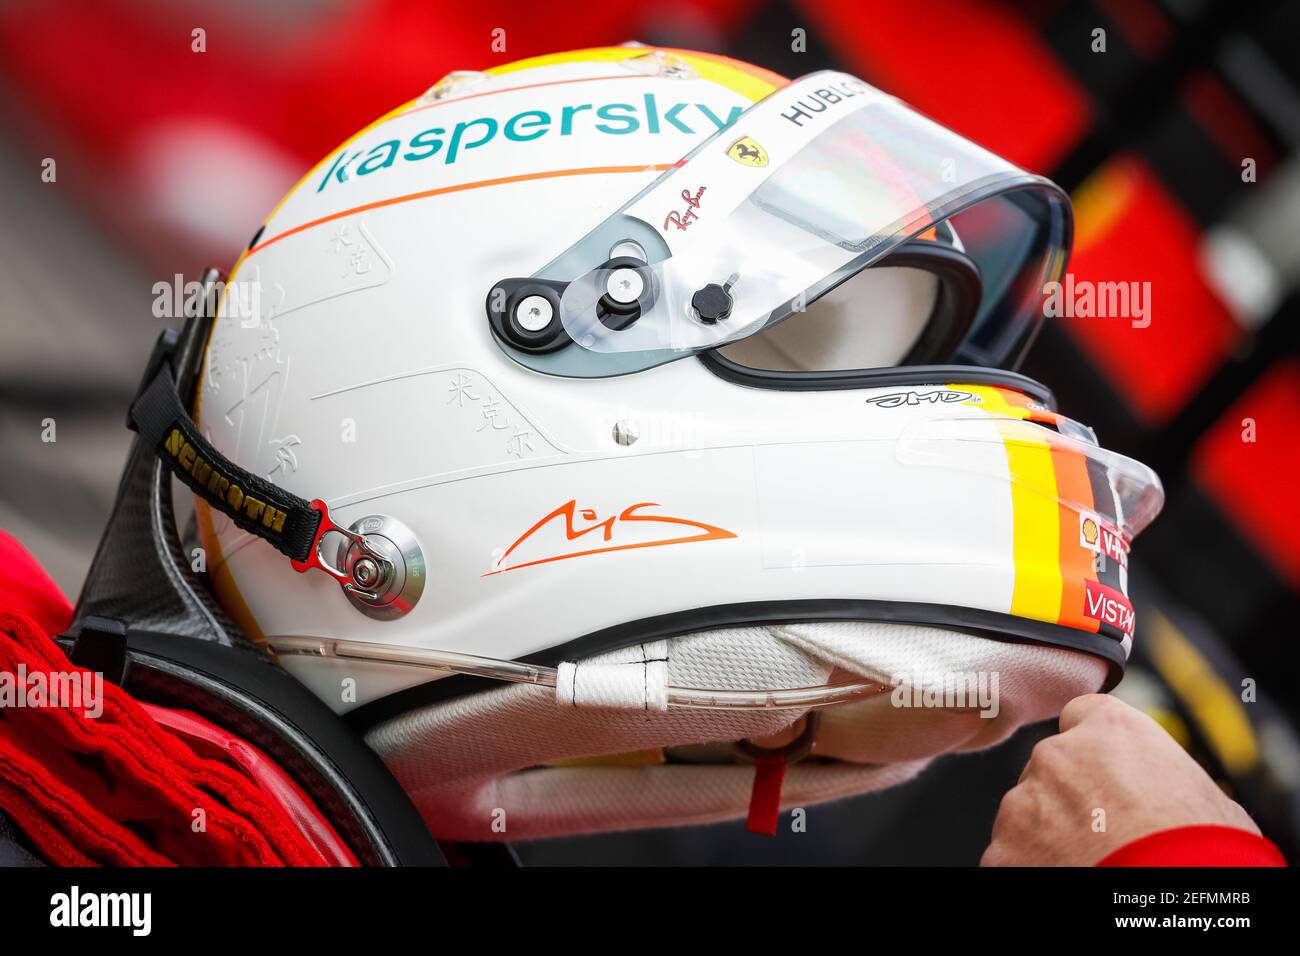 VETTEL Sebastian (ger), Scuderia Ferrari SF1000, portrait helmet, casque,  during the Formula 1 Aramco Grosser Preis Der Eifel 2020, Eifel Grand Prix,  from October 9 to 11, 2020 on the Nürburgring, in